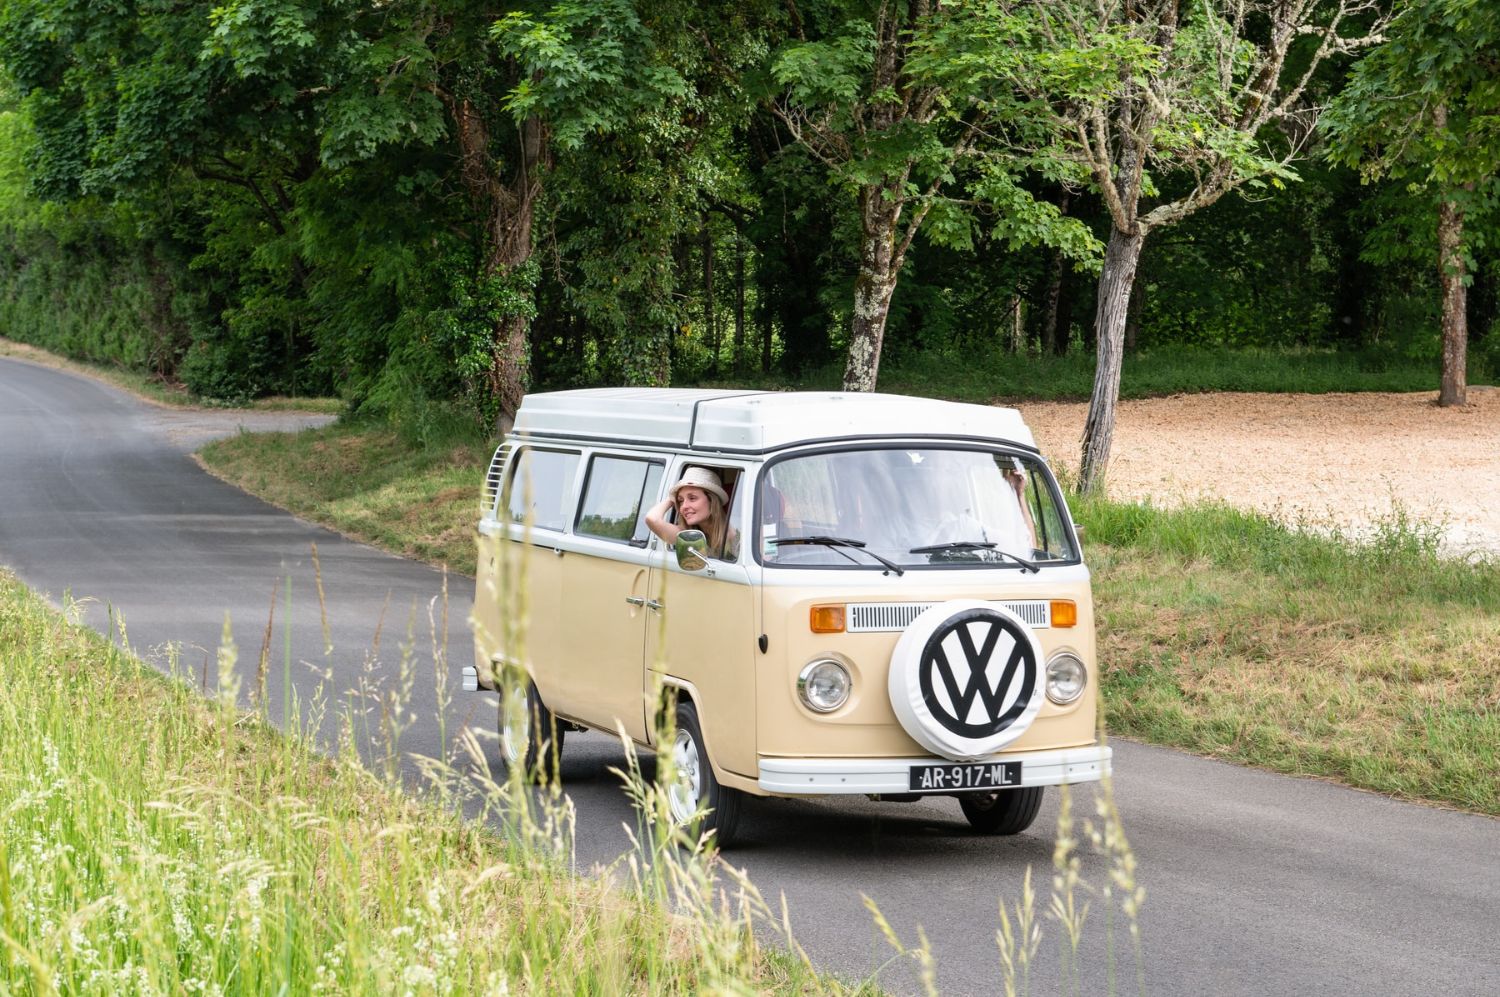 Louez une Volkswagen combi pour les vacances